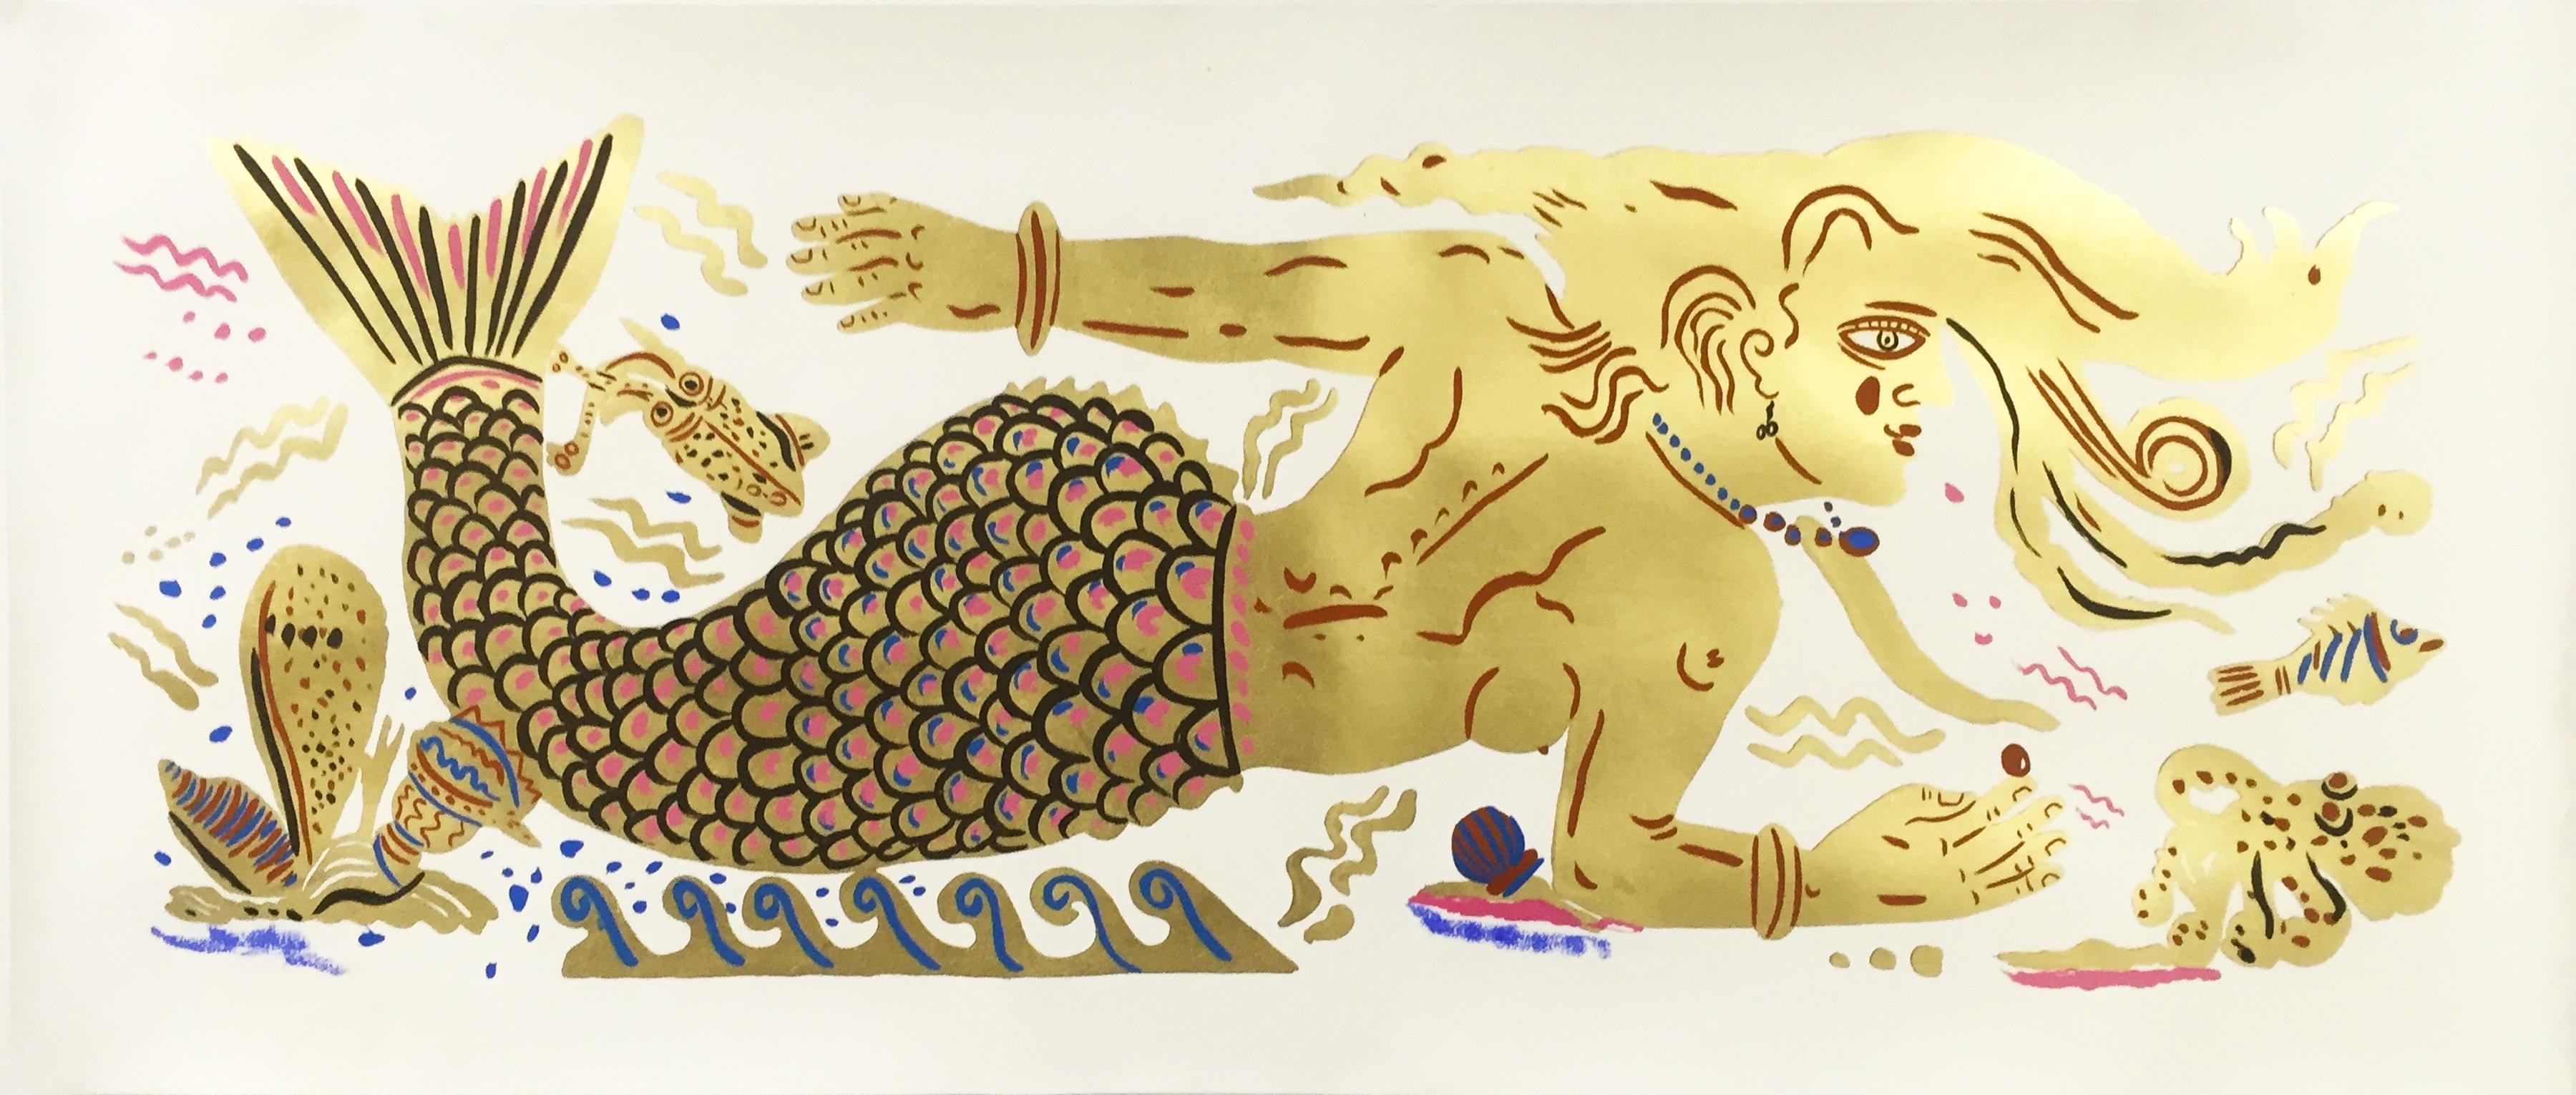 Maritim Maritime Dream, antik-griechisch inspiriertes Gemälde auf Papier, handgefertigtes Blattgold (Zeitgenössisch), Art, von Apostolos Chantzaras